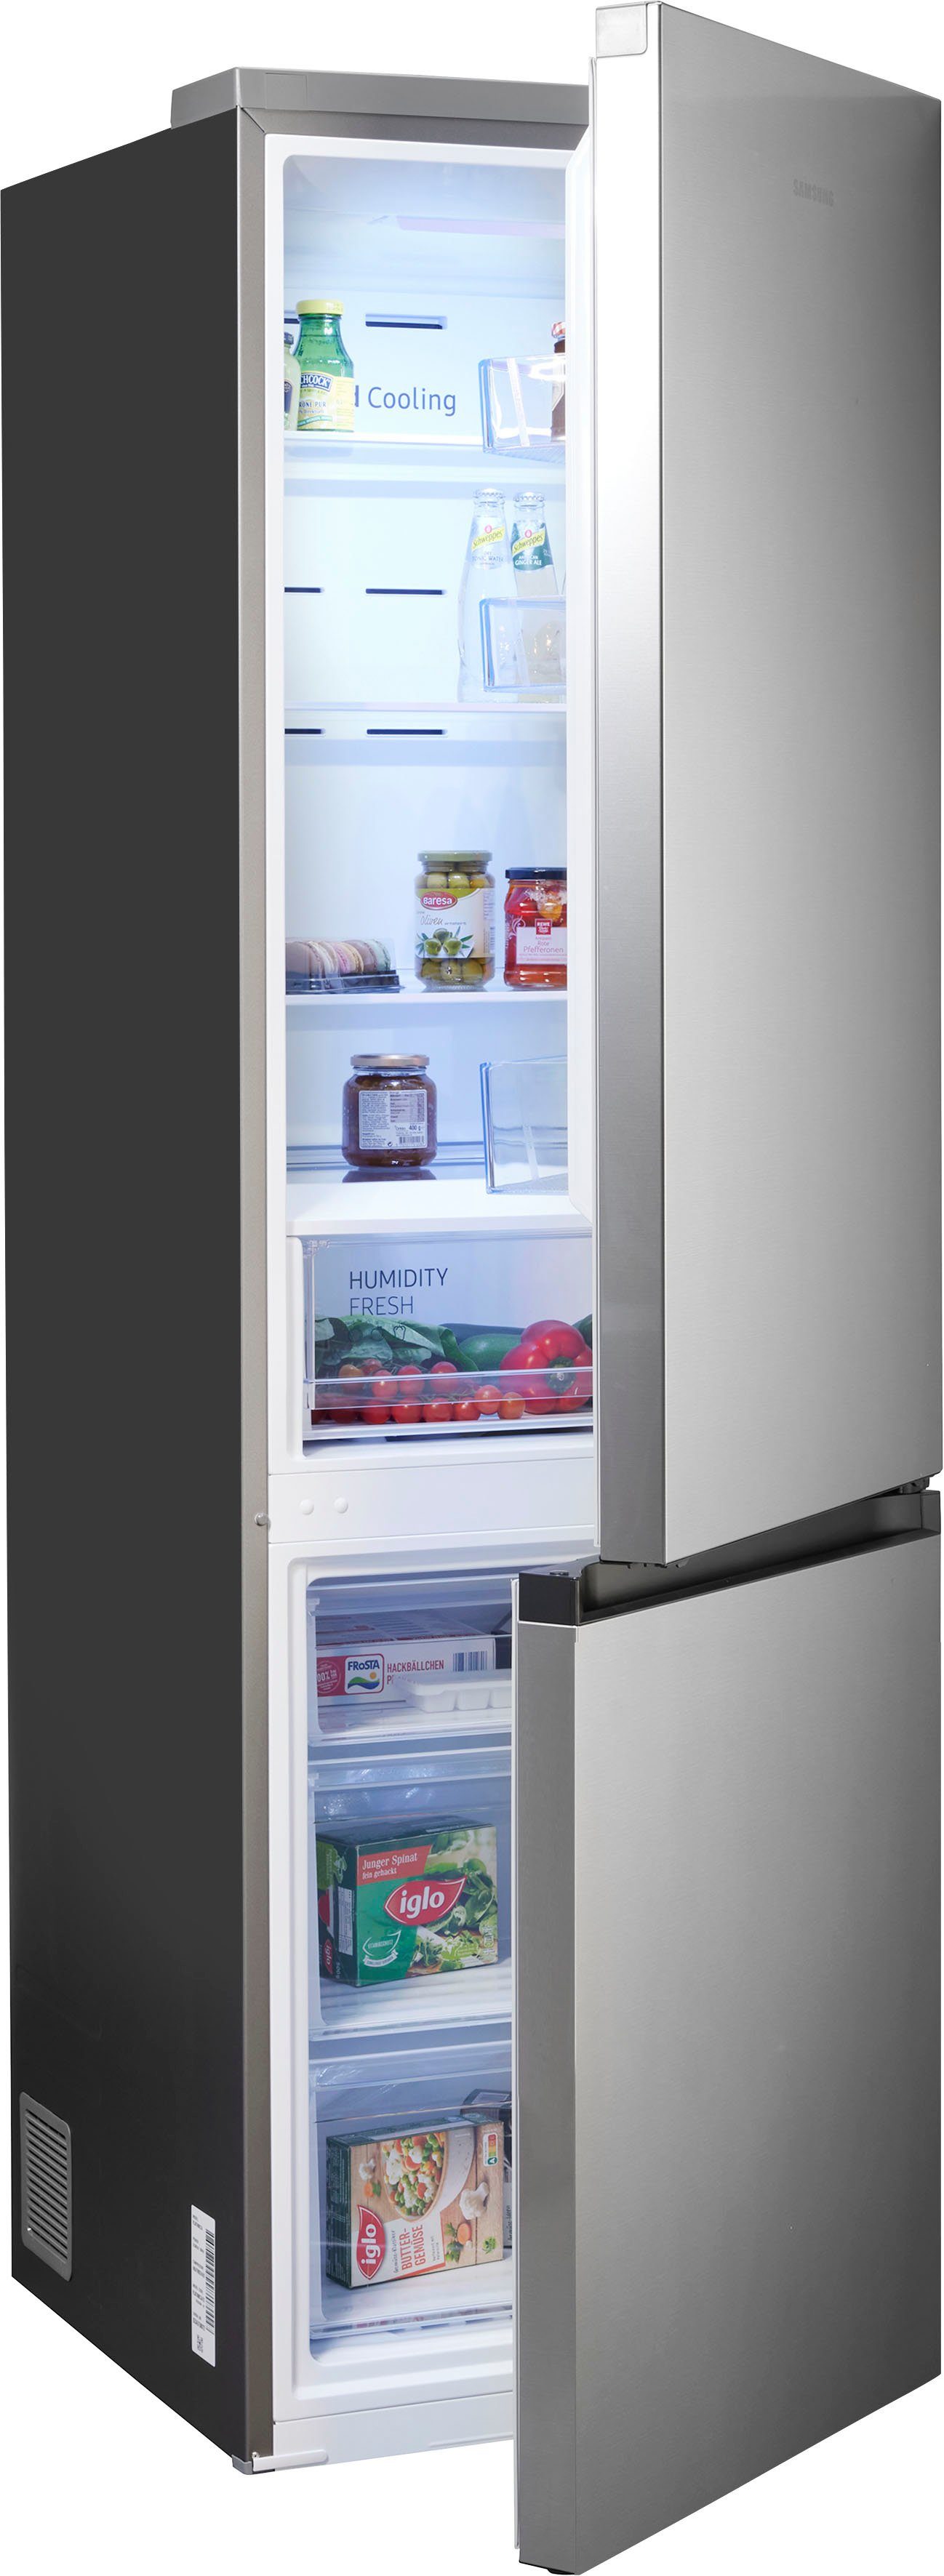 Bunte Kühlschränke online kaufen | OTTO